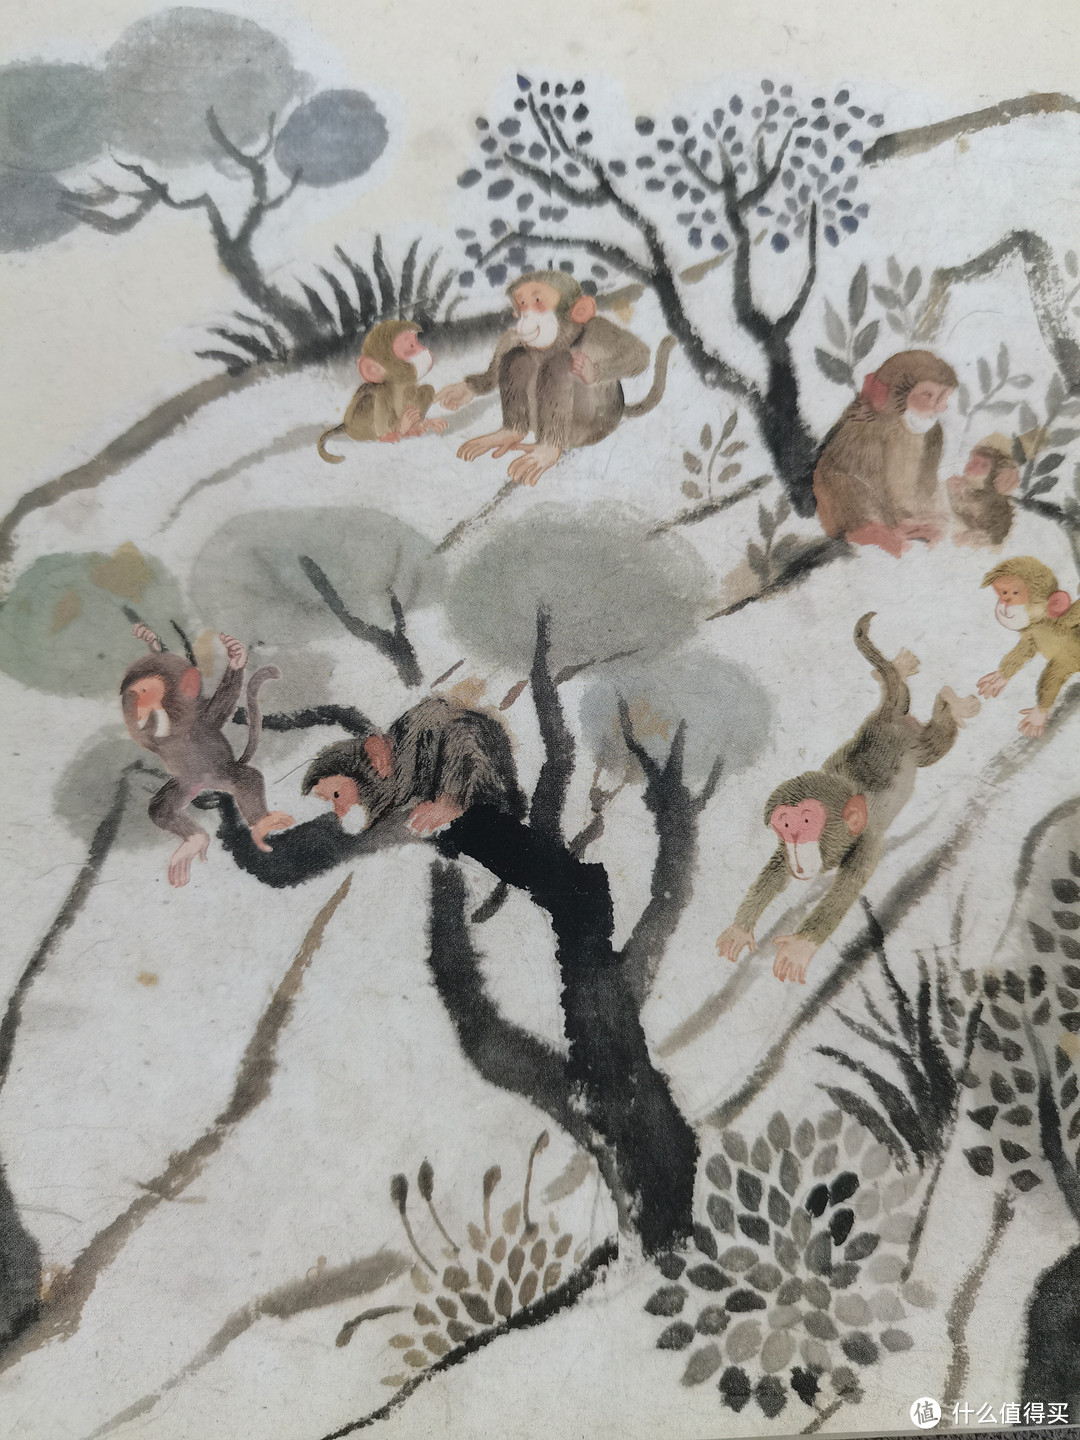 陪伴一代又一代中国儿童的经典故事|猴子捞月亮